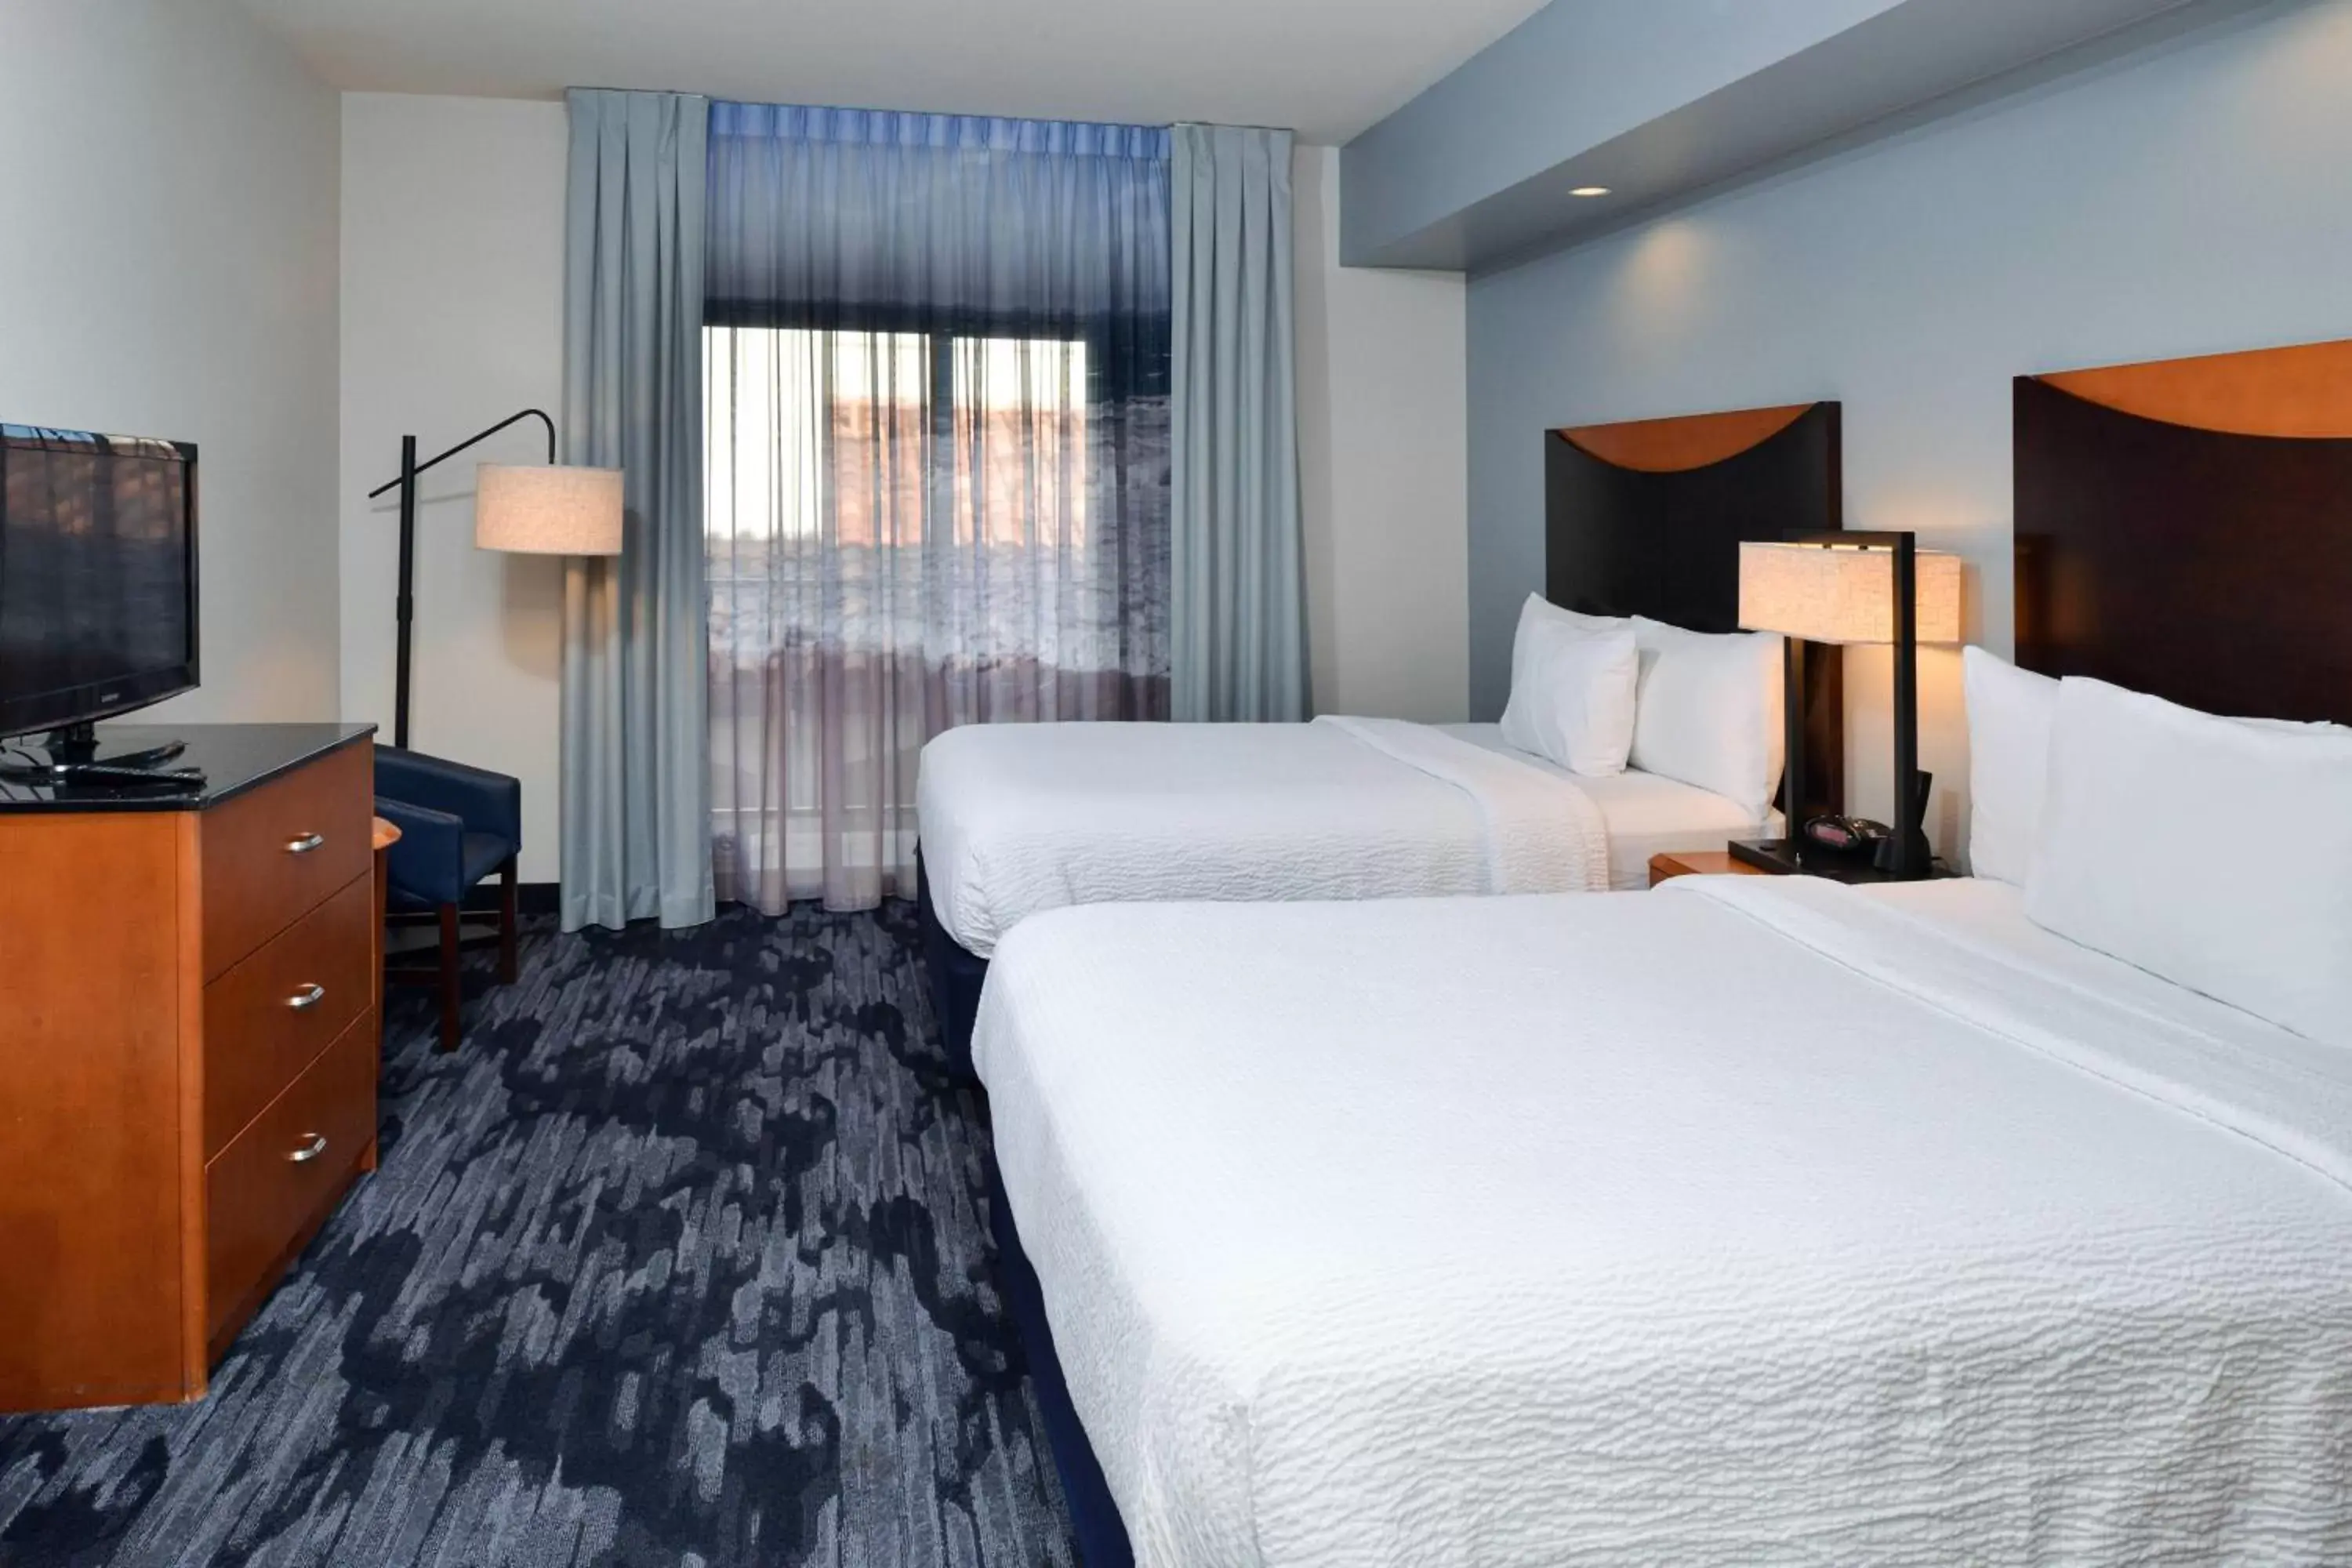 Bedroom, Bed in Fairfield Inn & Suites Santa Cruz - Capitola